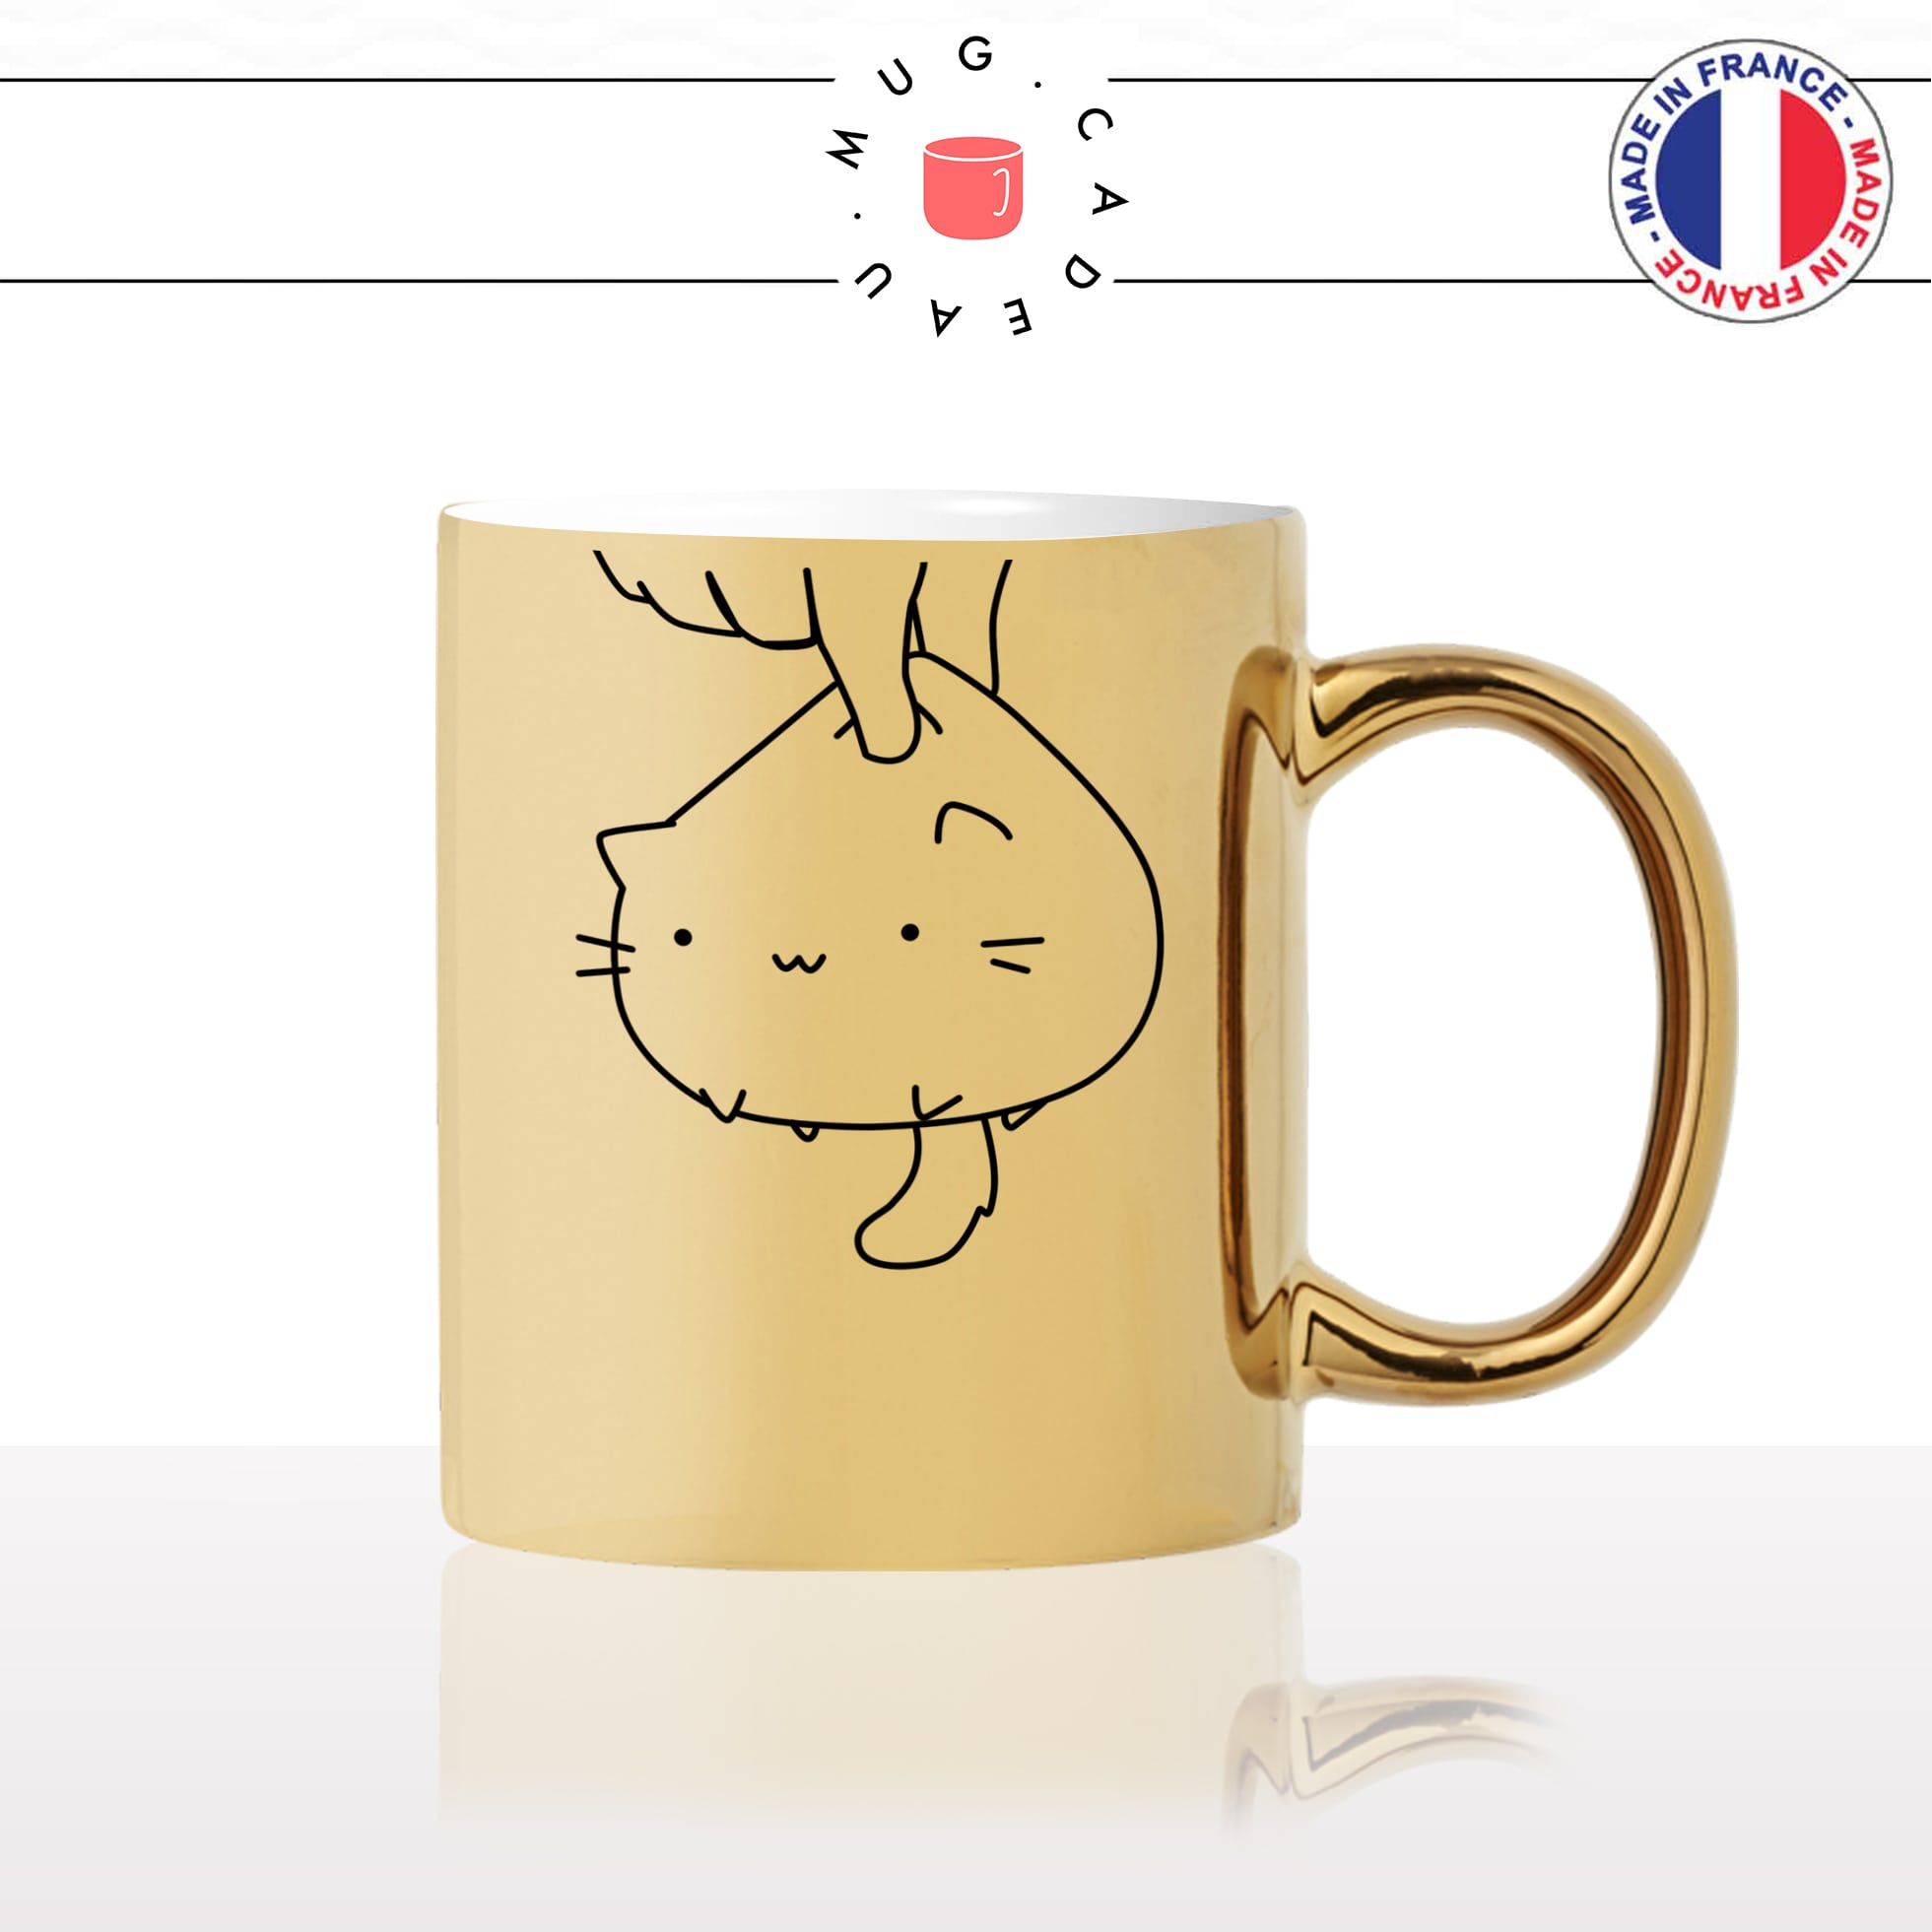 mug-tasse-or-doré-chat-cat-humour-mignon-chou-mimi-amour-animal-chaton-noir-fun-café-thé-idée-cadeau-original-personnalisé-gold2-min